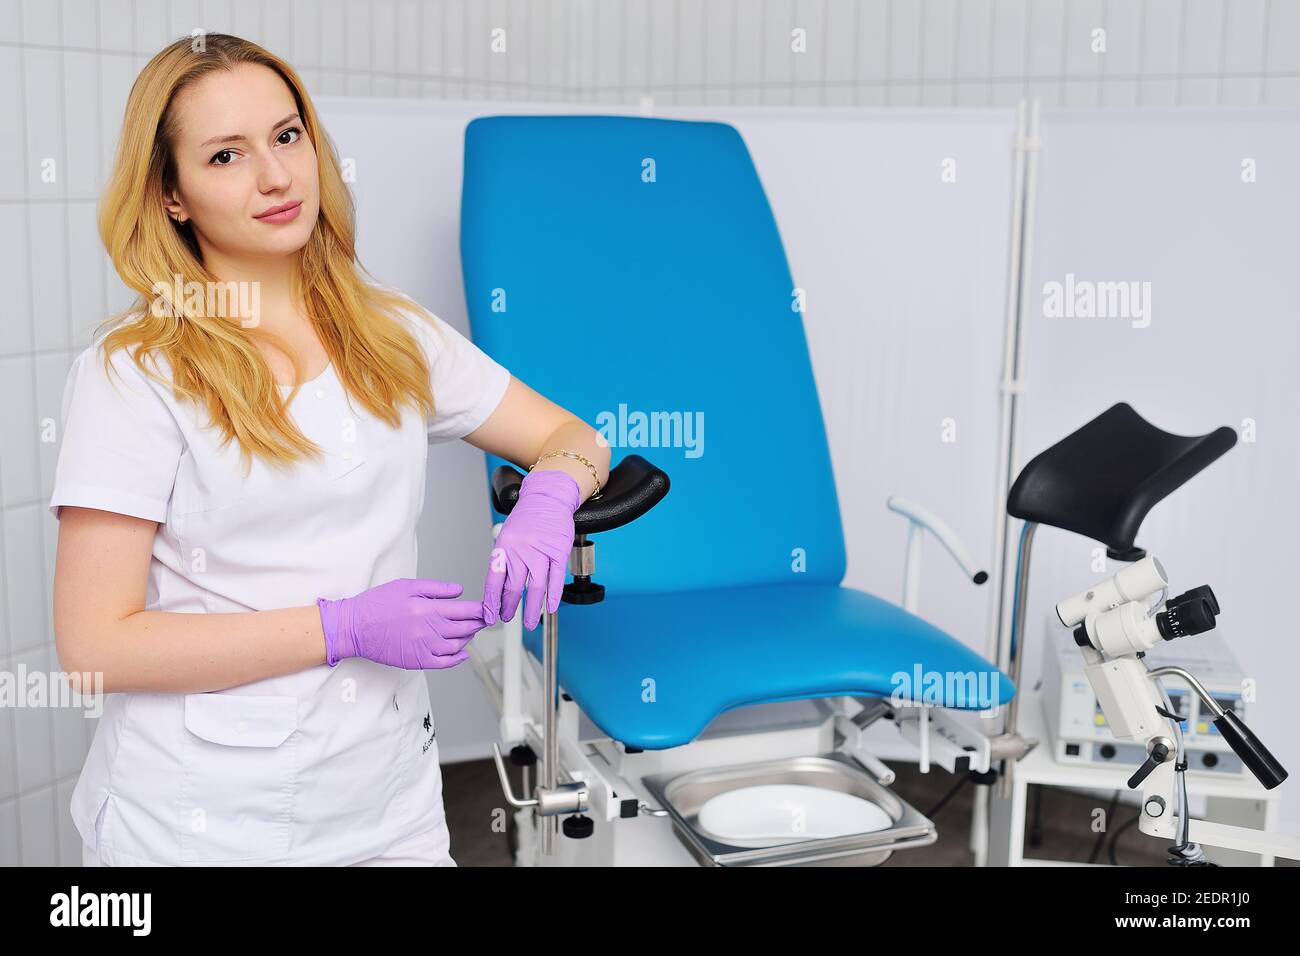 Eine attraktive junge Frau Doktor Gynäkologe auf einem blauen gynäkologischen  Stuhl lehnt lächelt vor dem Hintergrund eines Kolposkopes und einer  modernen Klinik Stockfotografie - Alamy